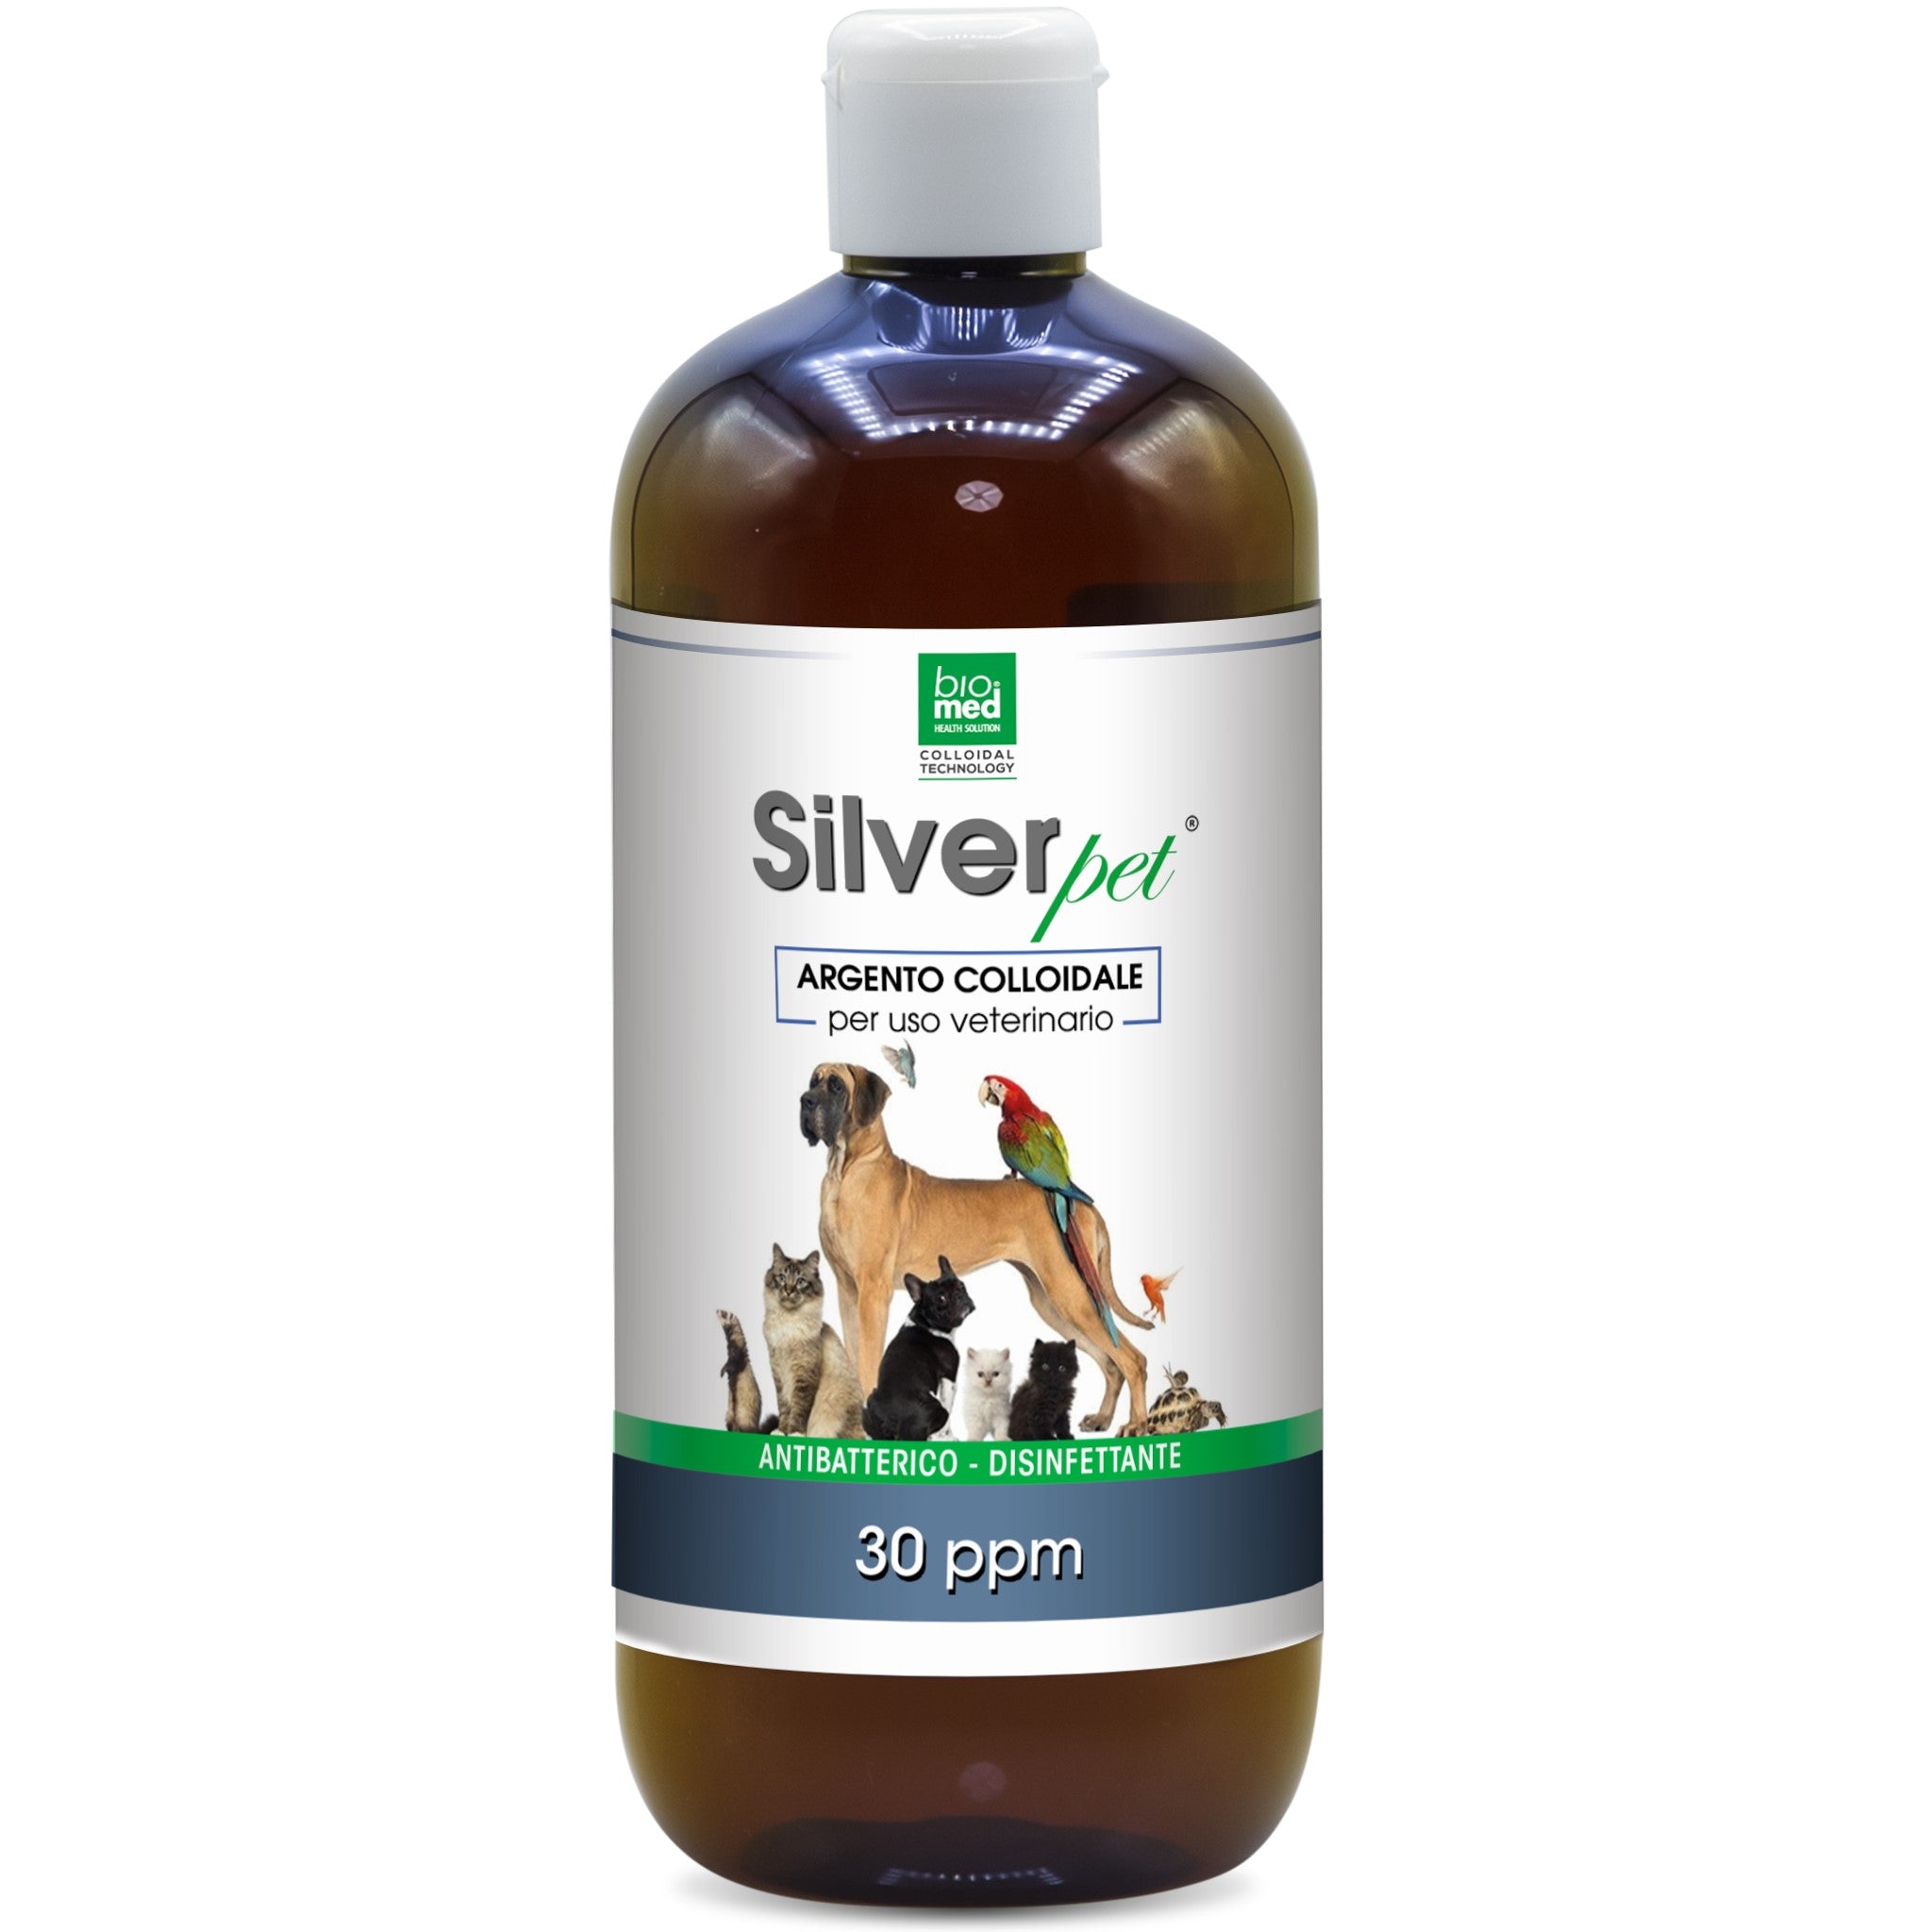 SilverPet Argento colloidale Attivo veterinario biomed - Nano Gocce - 500ml - 30ppm